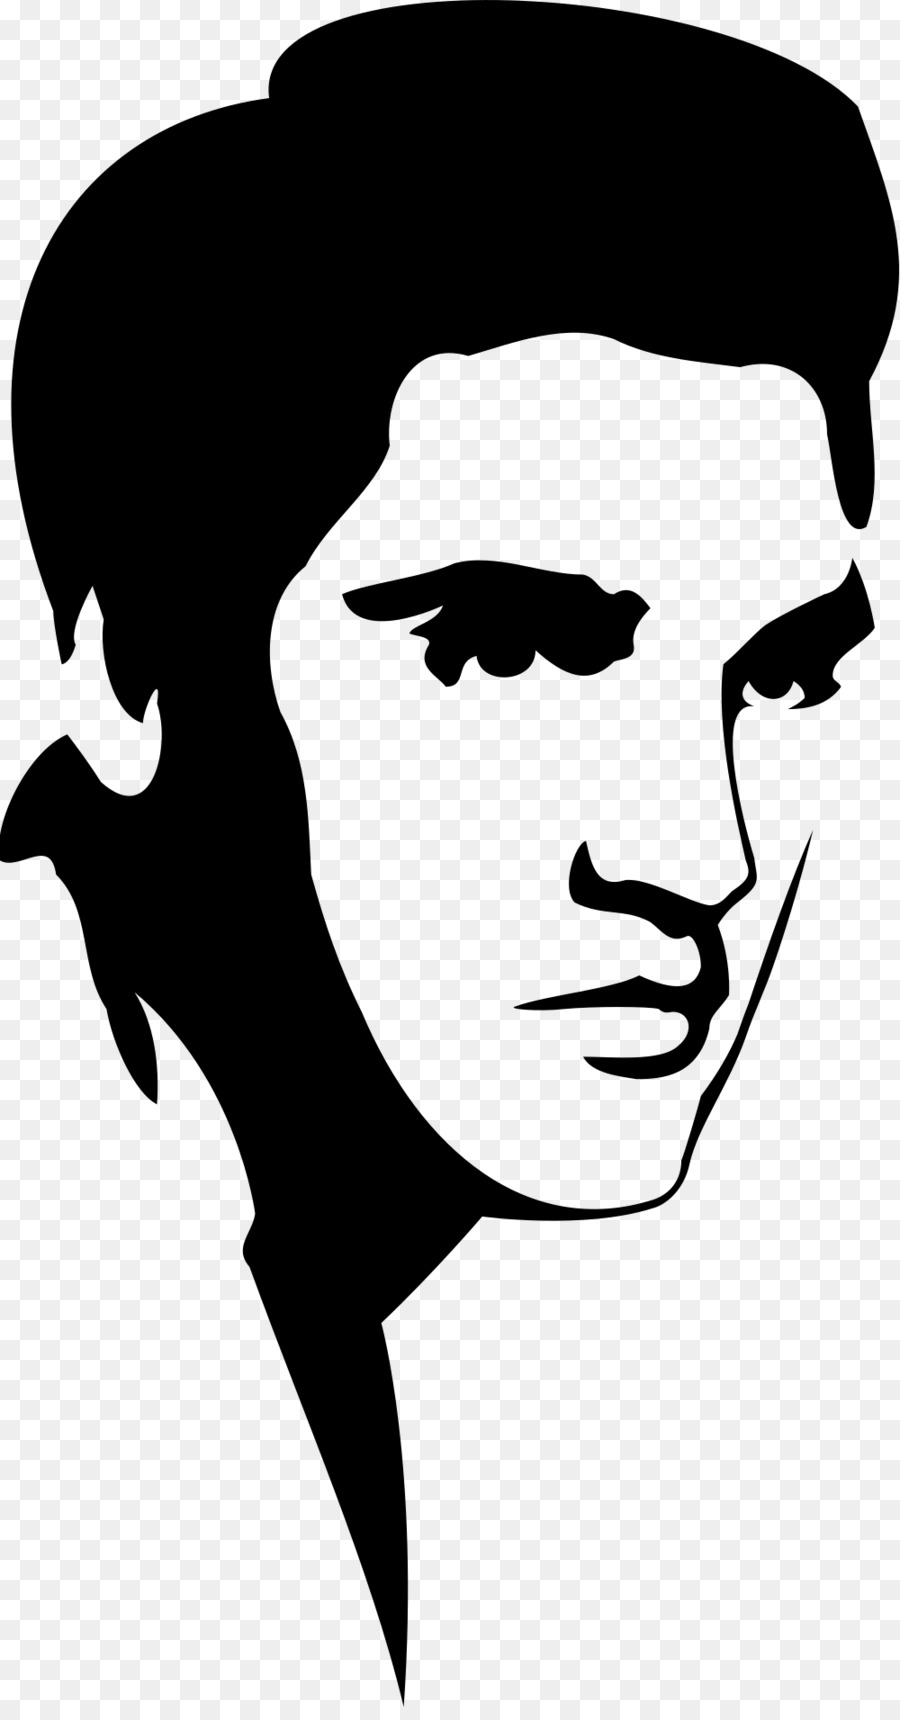 Elvis Presley Stencil Silhouette Clip art - ELVIS png download - 1000*1897 - Free Transparent Elvis Presley png Download.